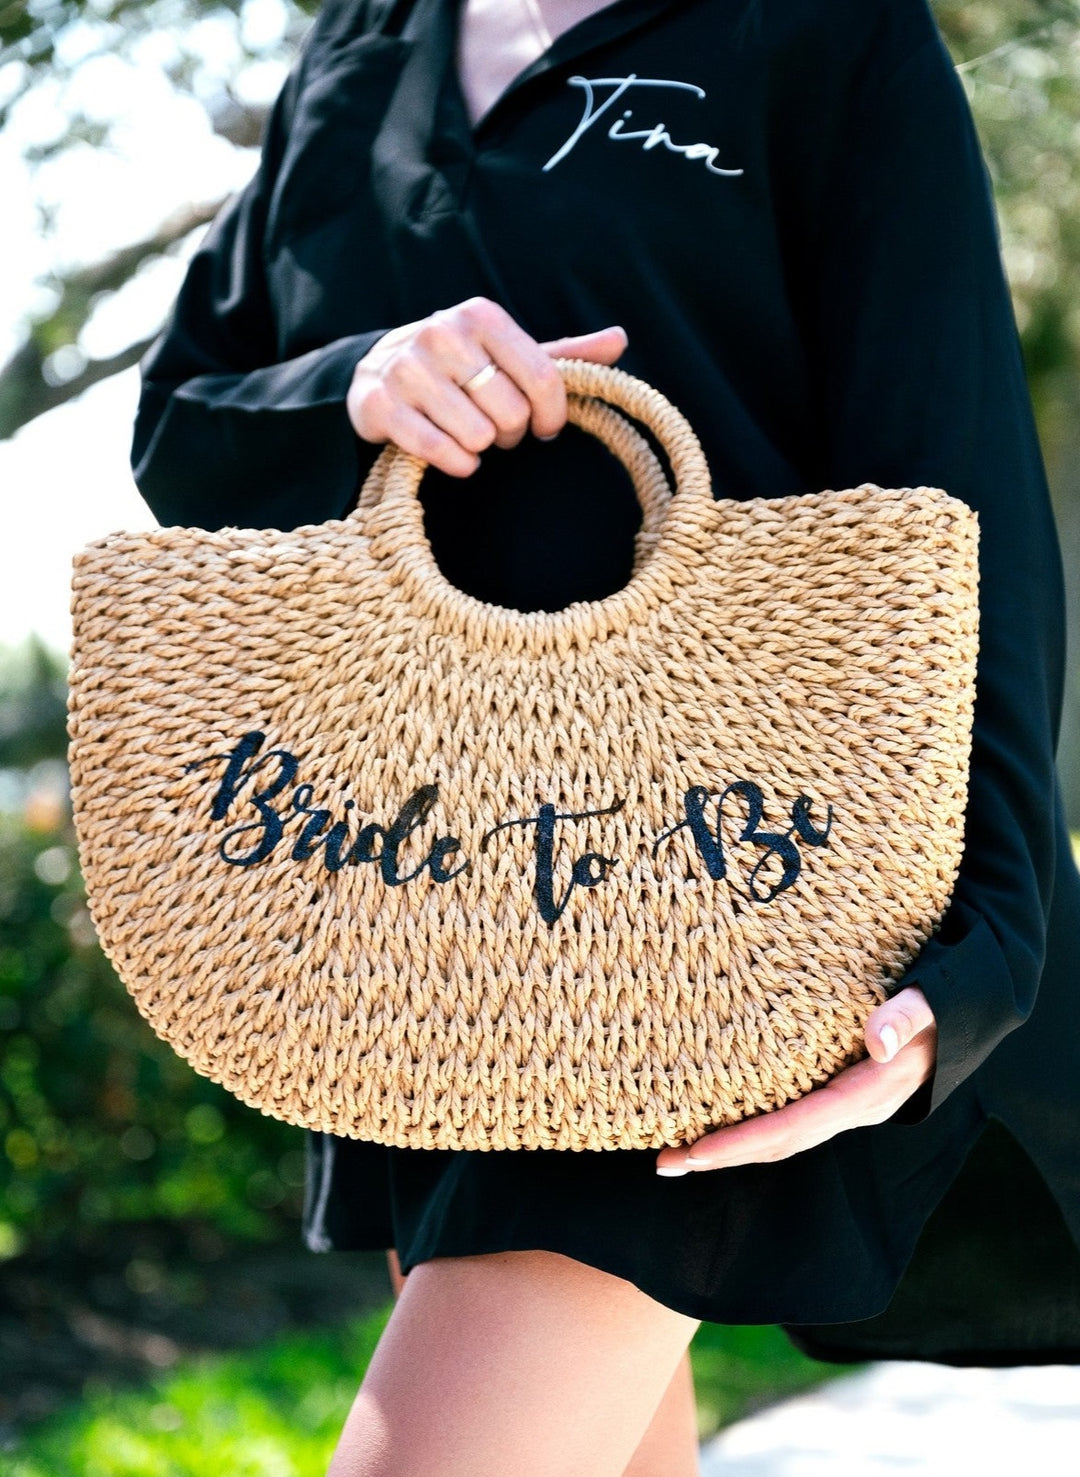 Custom Beach Bag style6 - Beach Bag